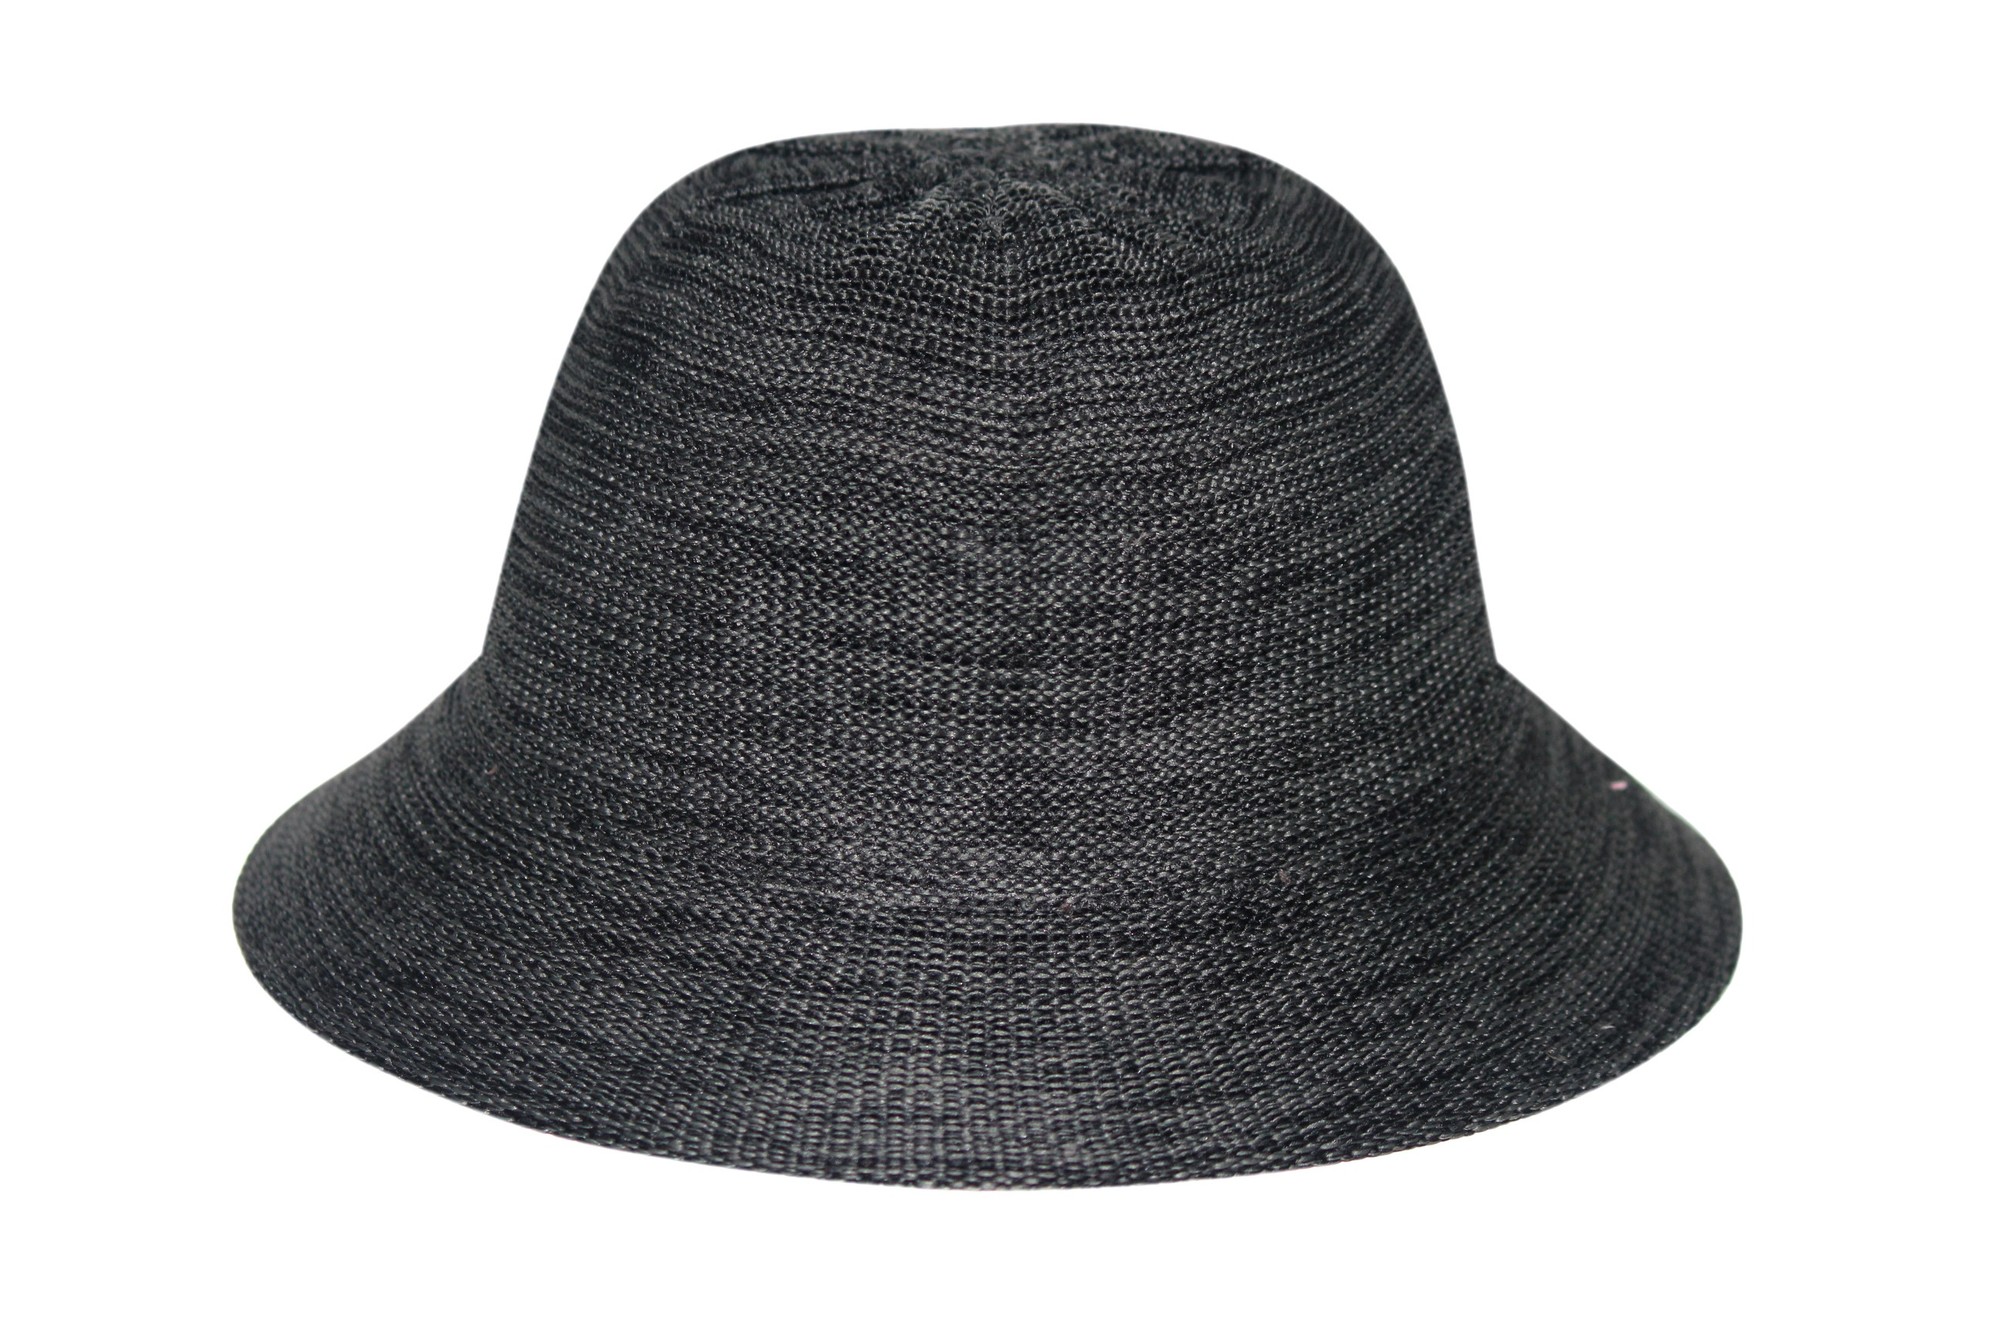 Rigon - Bucket-Hut für Damen - Schwarz Meliert